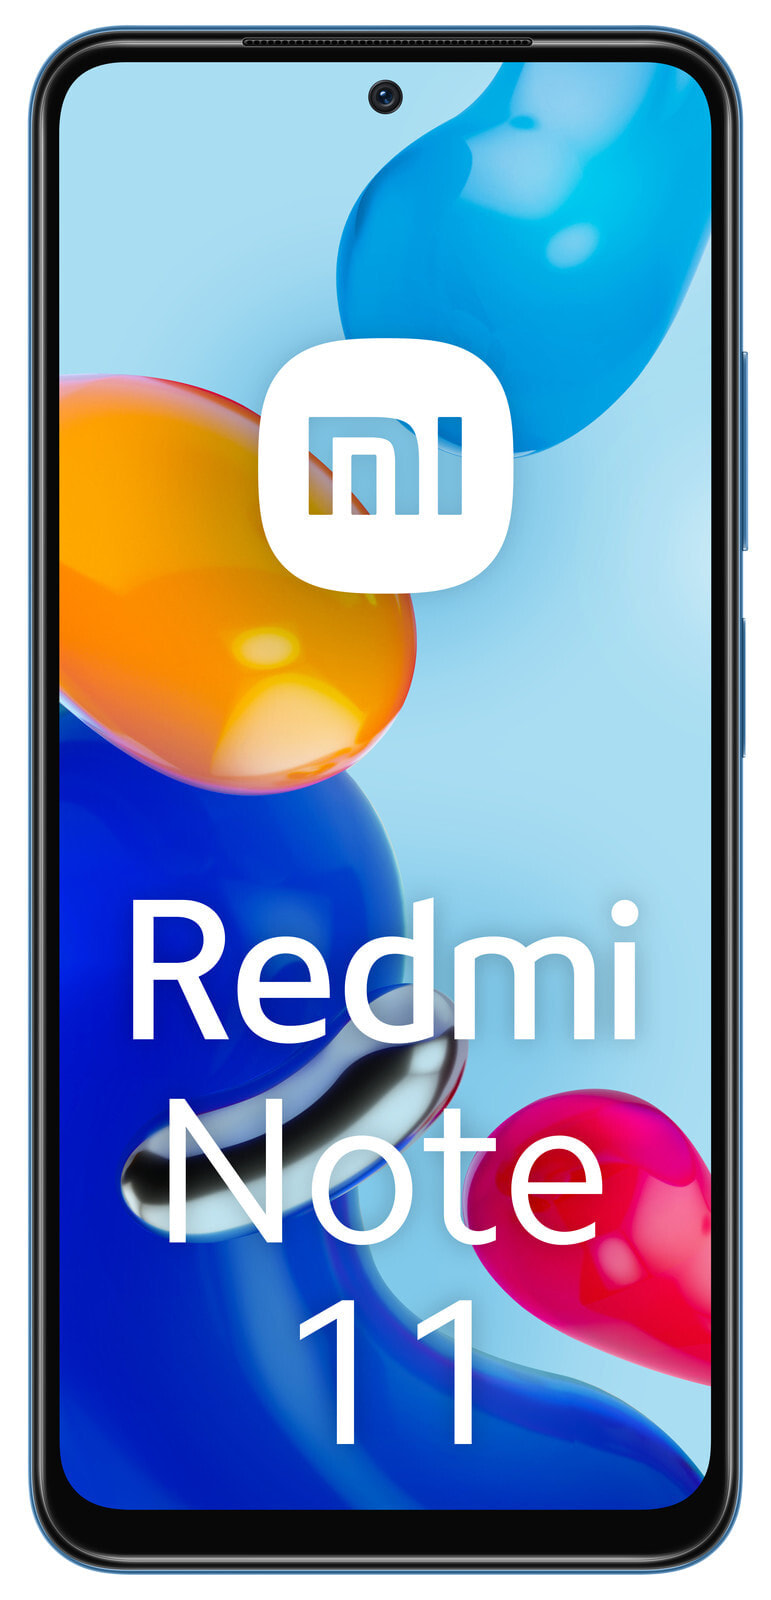 Redmi Note 1 - Smartphone - 8 MP 64 GB - Blue